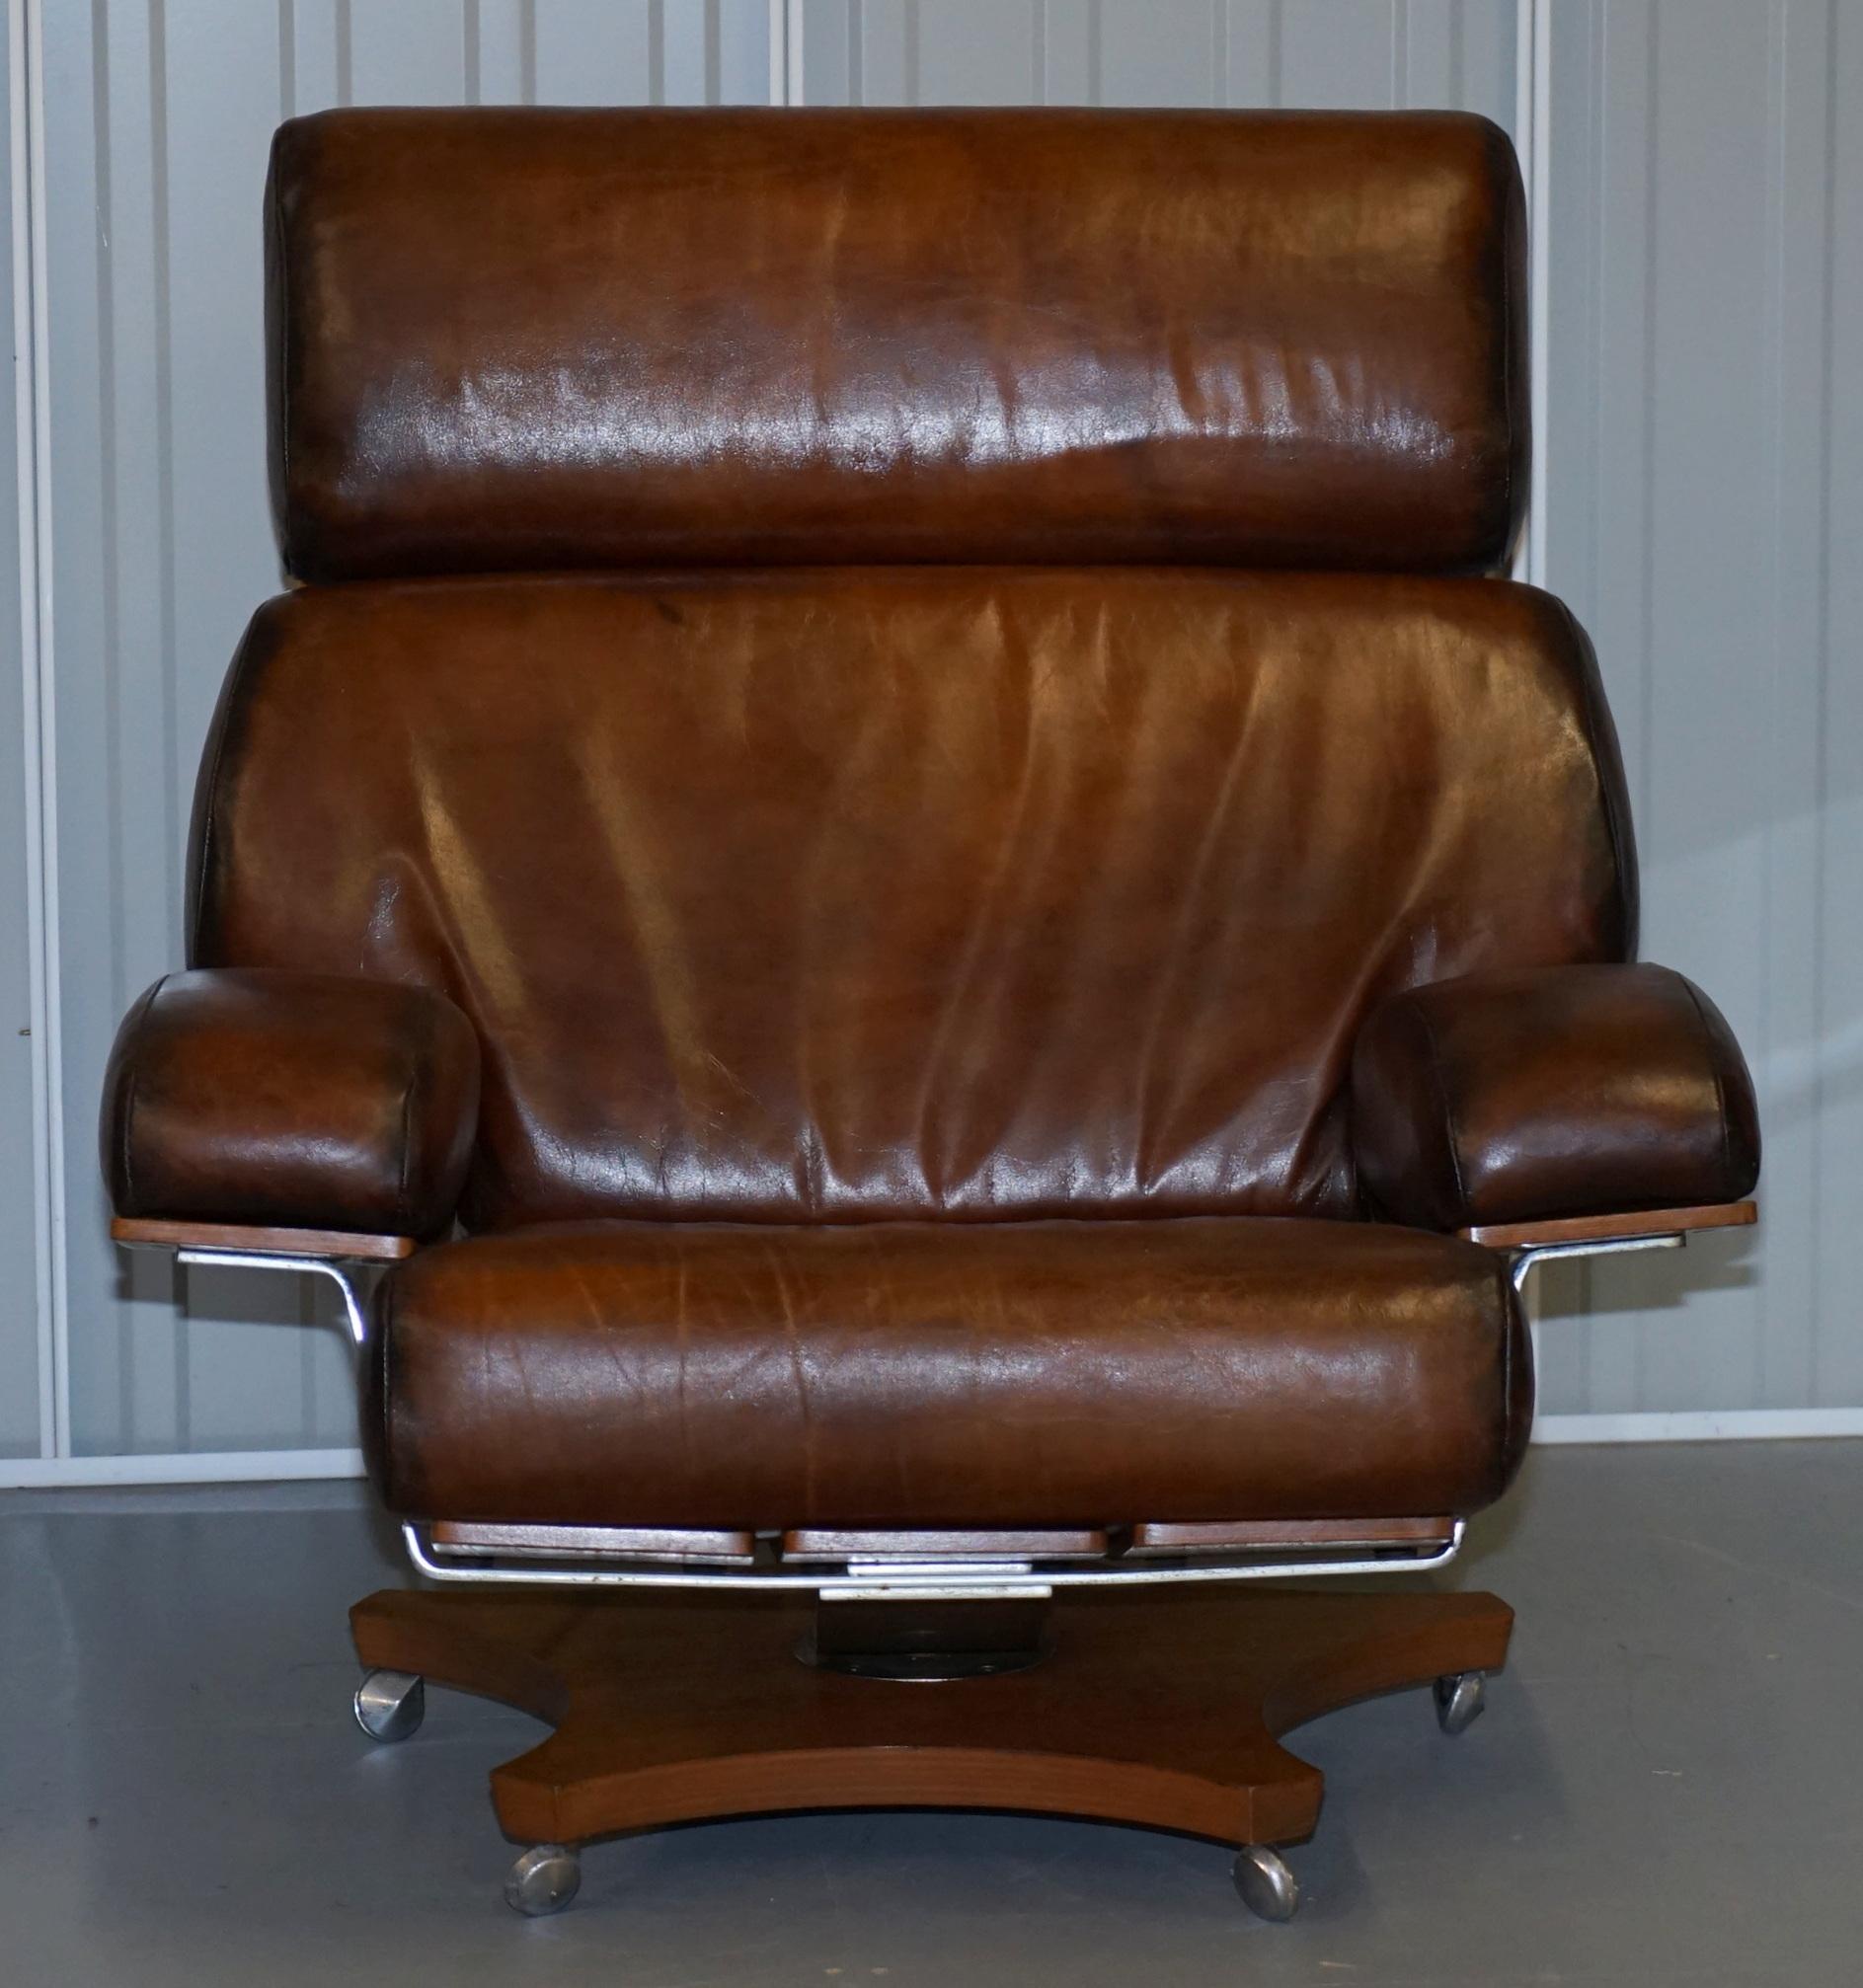 Nous sommes ravis de proposer à la vente ce superbe fauteuil pivotant G-Plan, unique en son genre et entièrement restauré.

Il s'agit tout simplement du plus bel exemple de cette chaise au monde aujourd'hui !

Cette chaise offre un confort